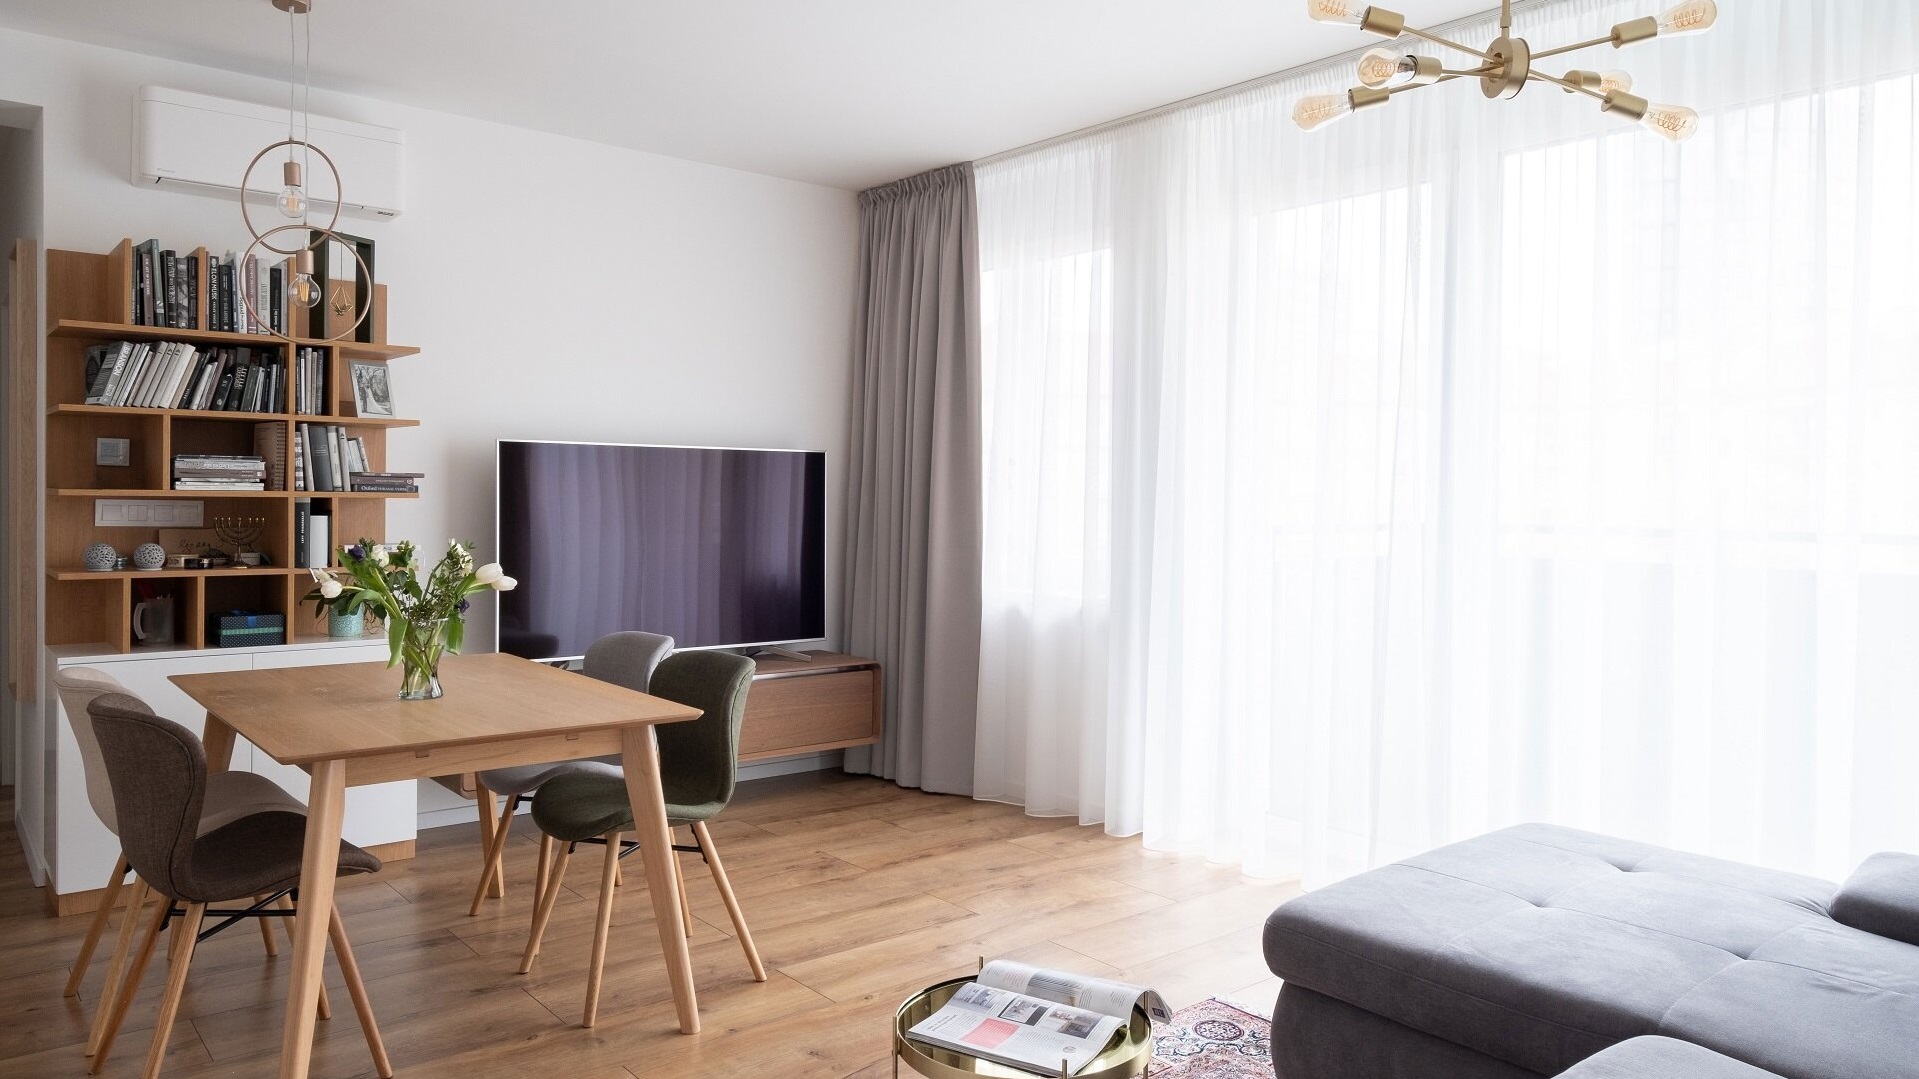 Obývačka v neutrálnych farbách obohatená zlatými prvkami a prevažne dreveným nábytkom vrátane jedálenského stola